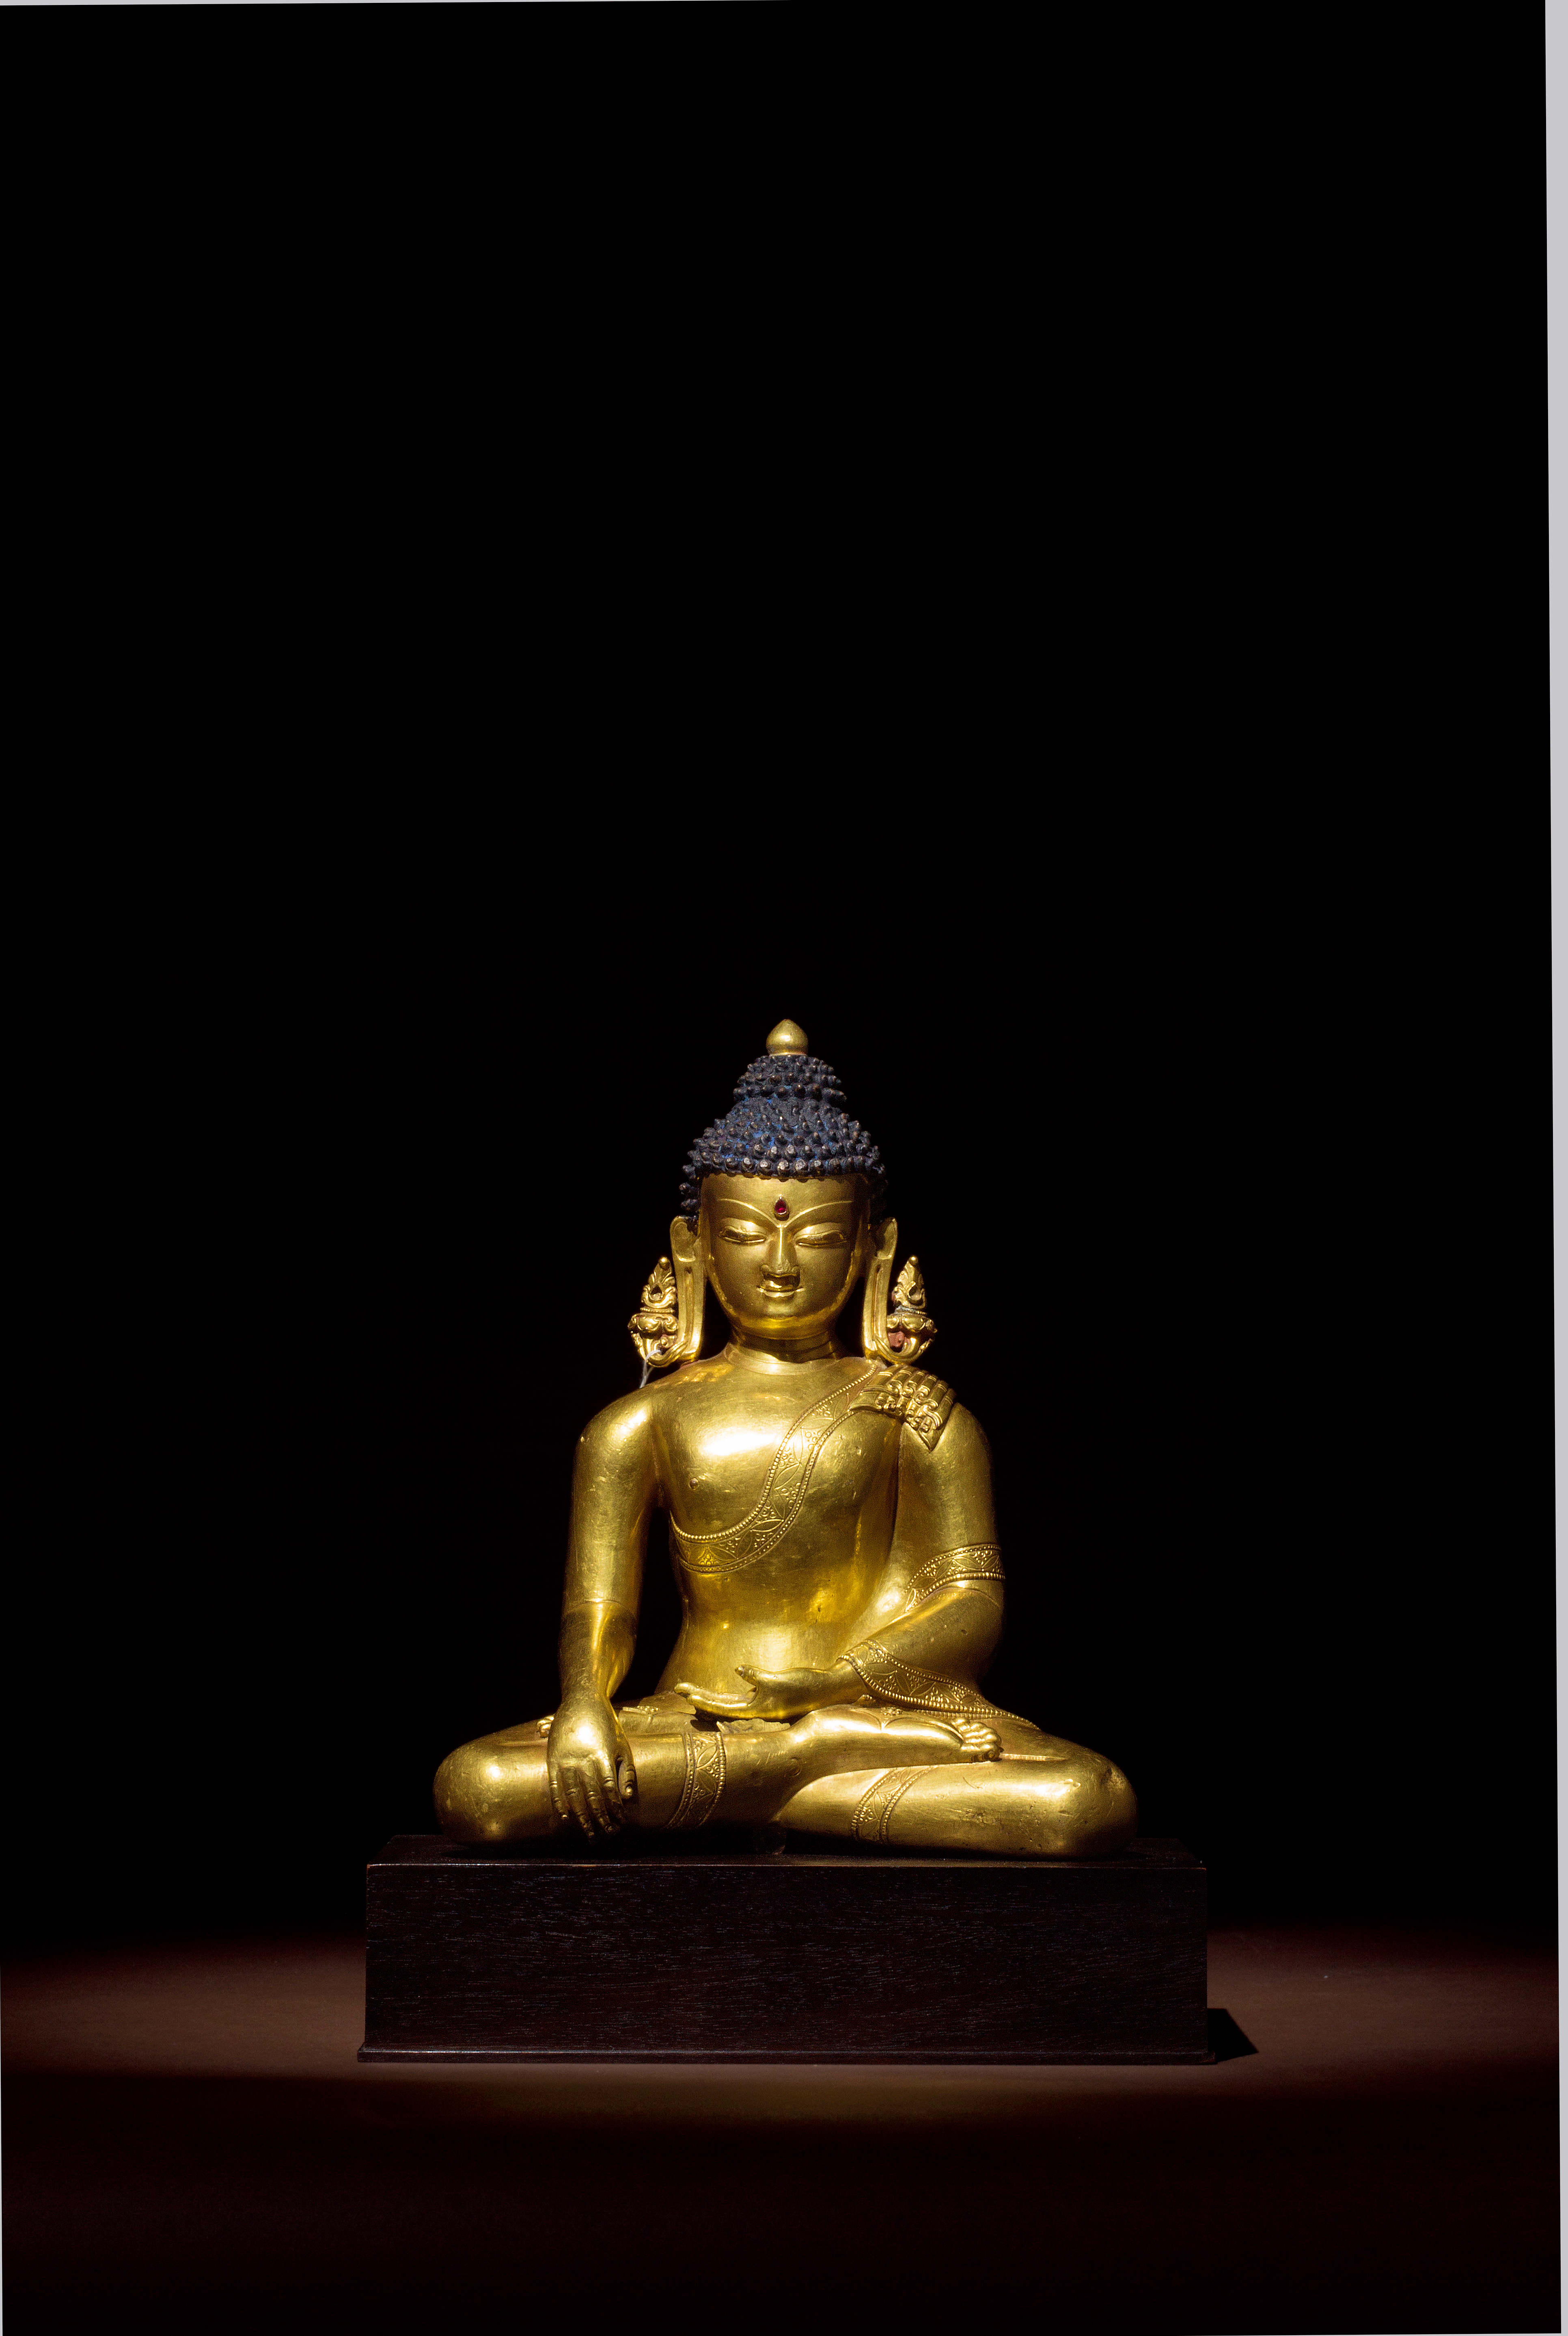 1314世纪马拉王朝释迦牟尼佛像